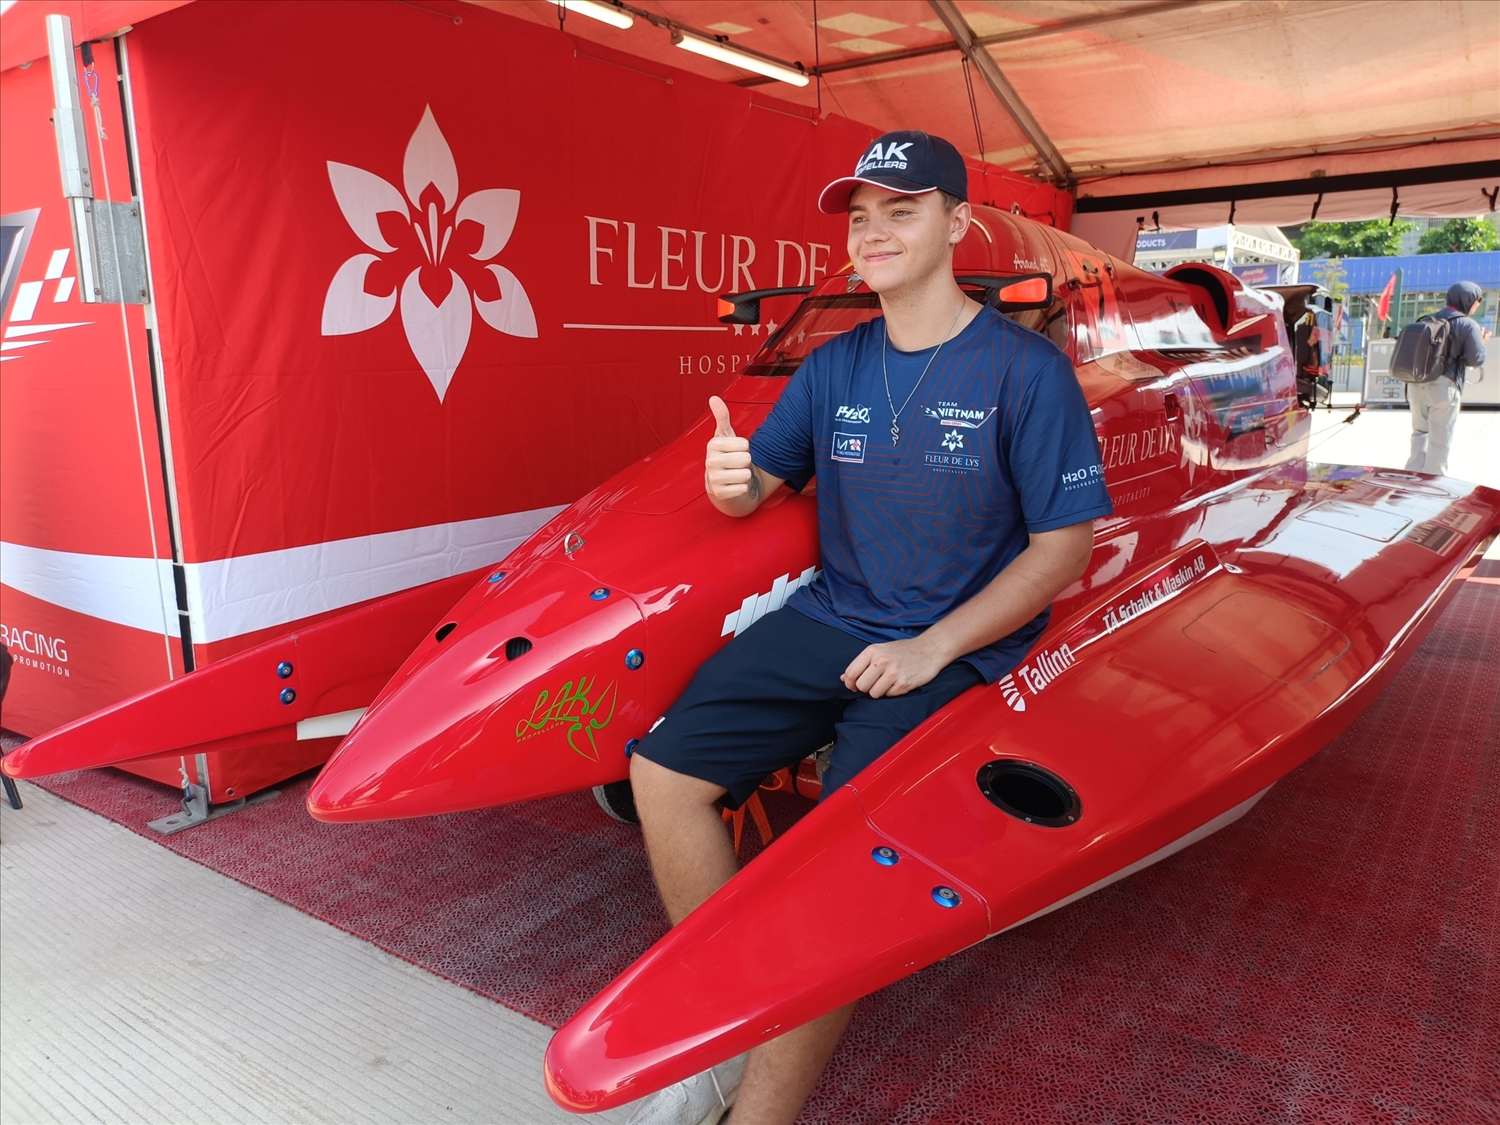 Tay đua trẻ Arand đại diện cho đội F1H2O Bình Định – Việt Nam bên chiếc thuyền máy của mình